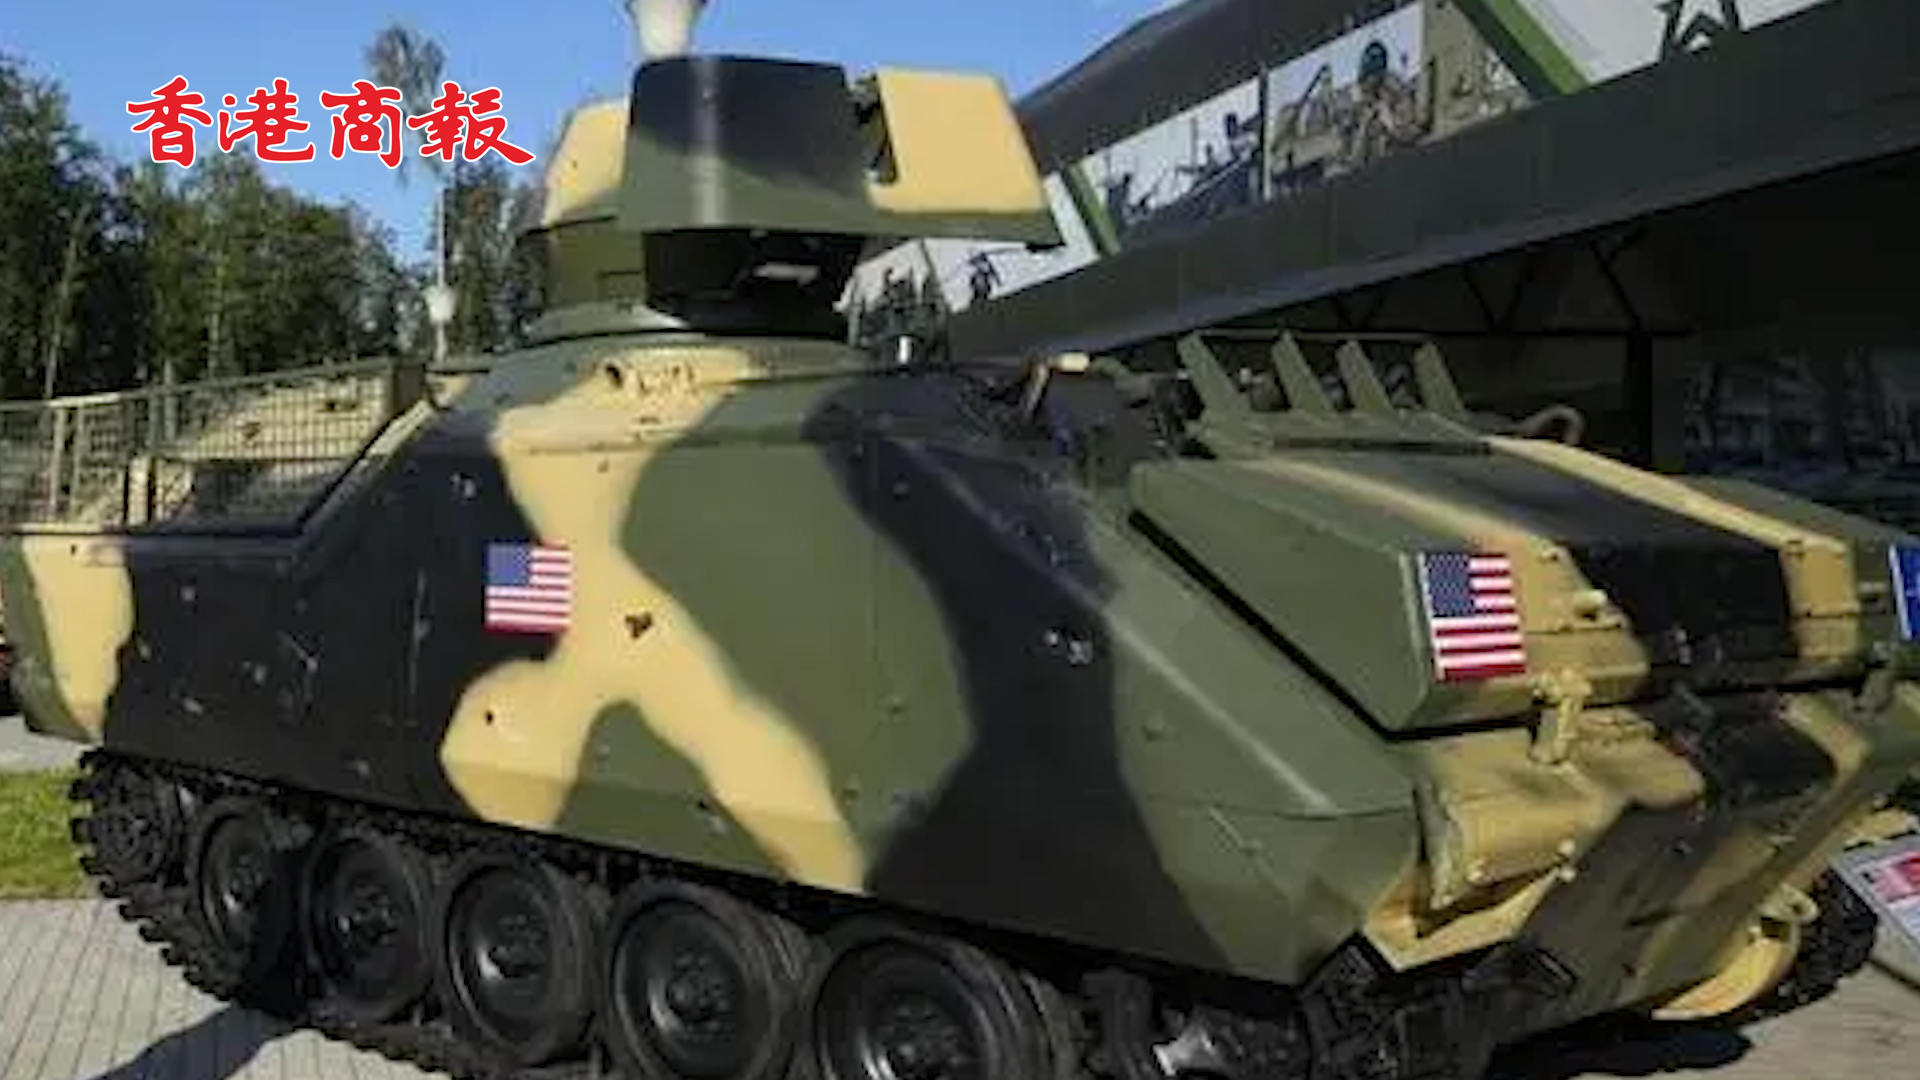 有片丨俄軍展示被俘的烏軍裝甲車 車身上印有美國國旗